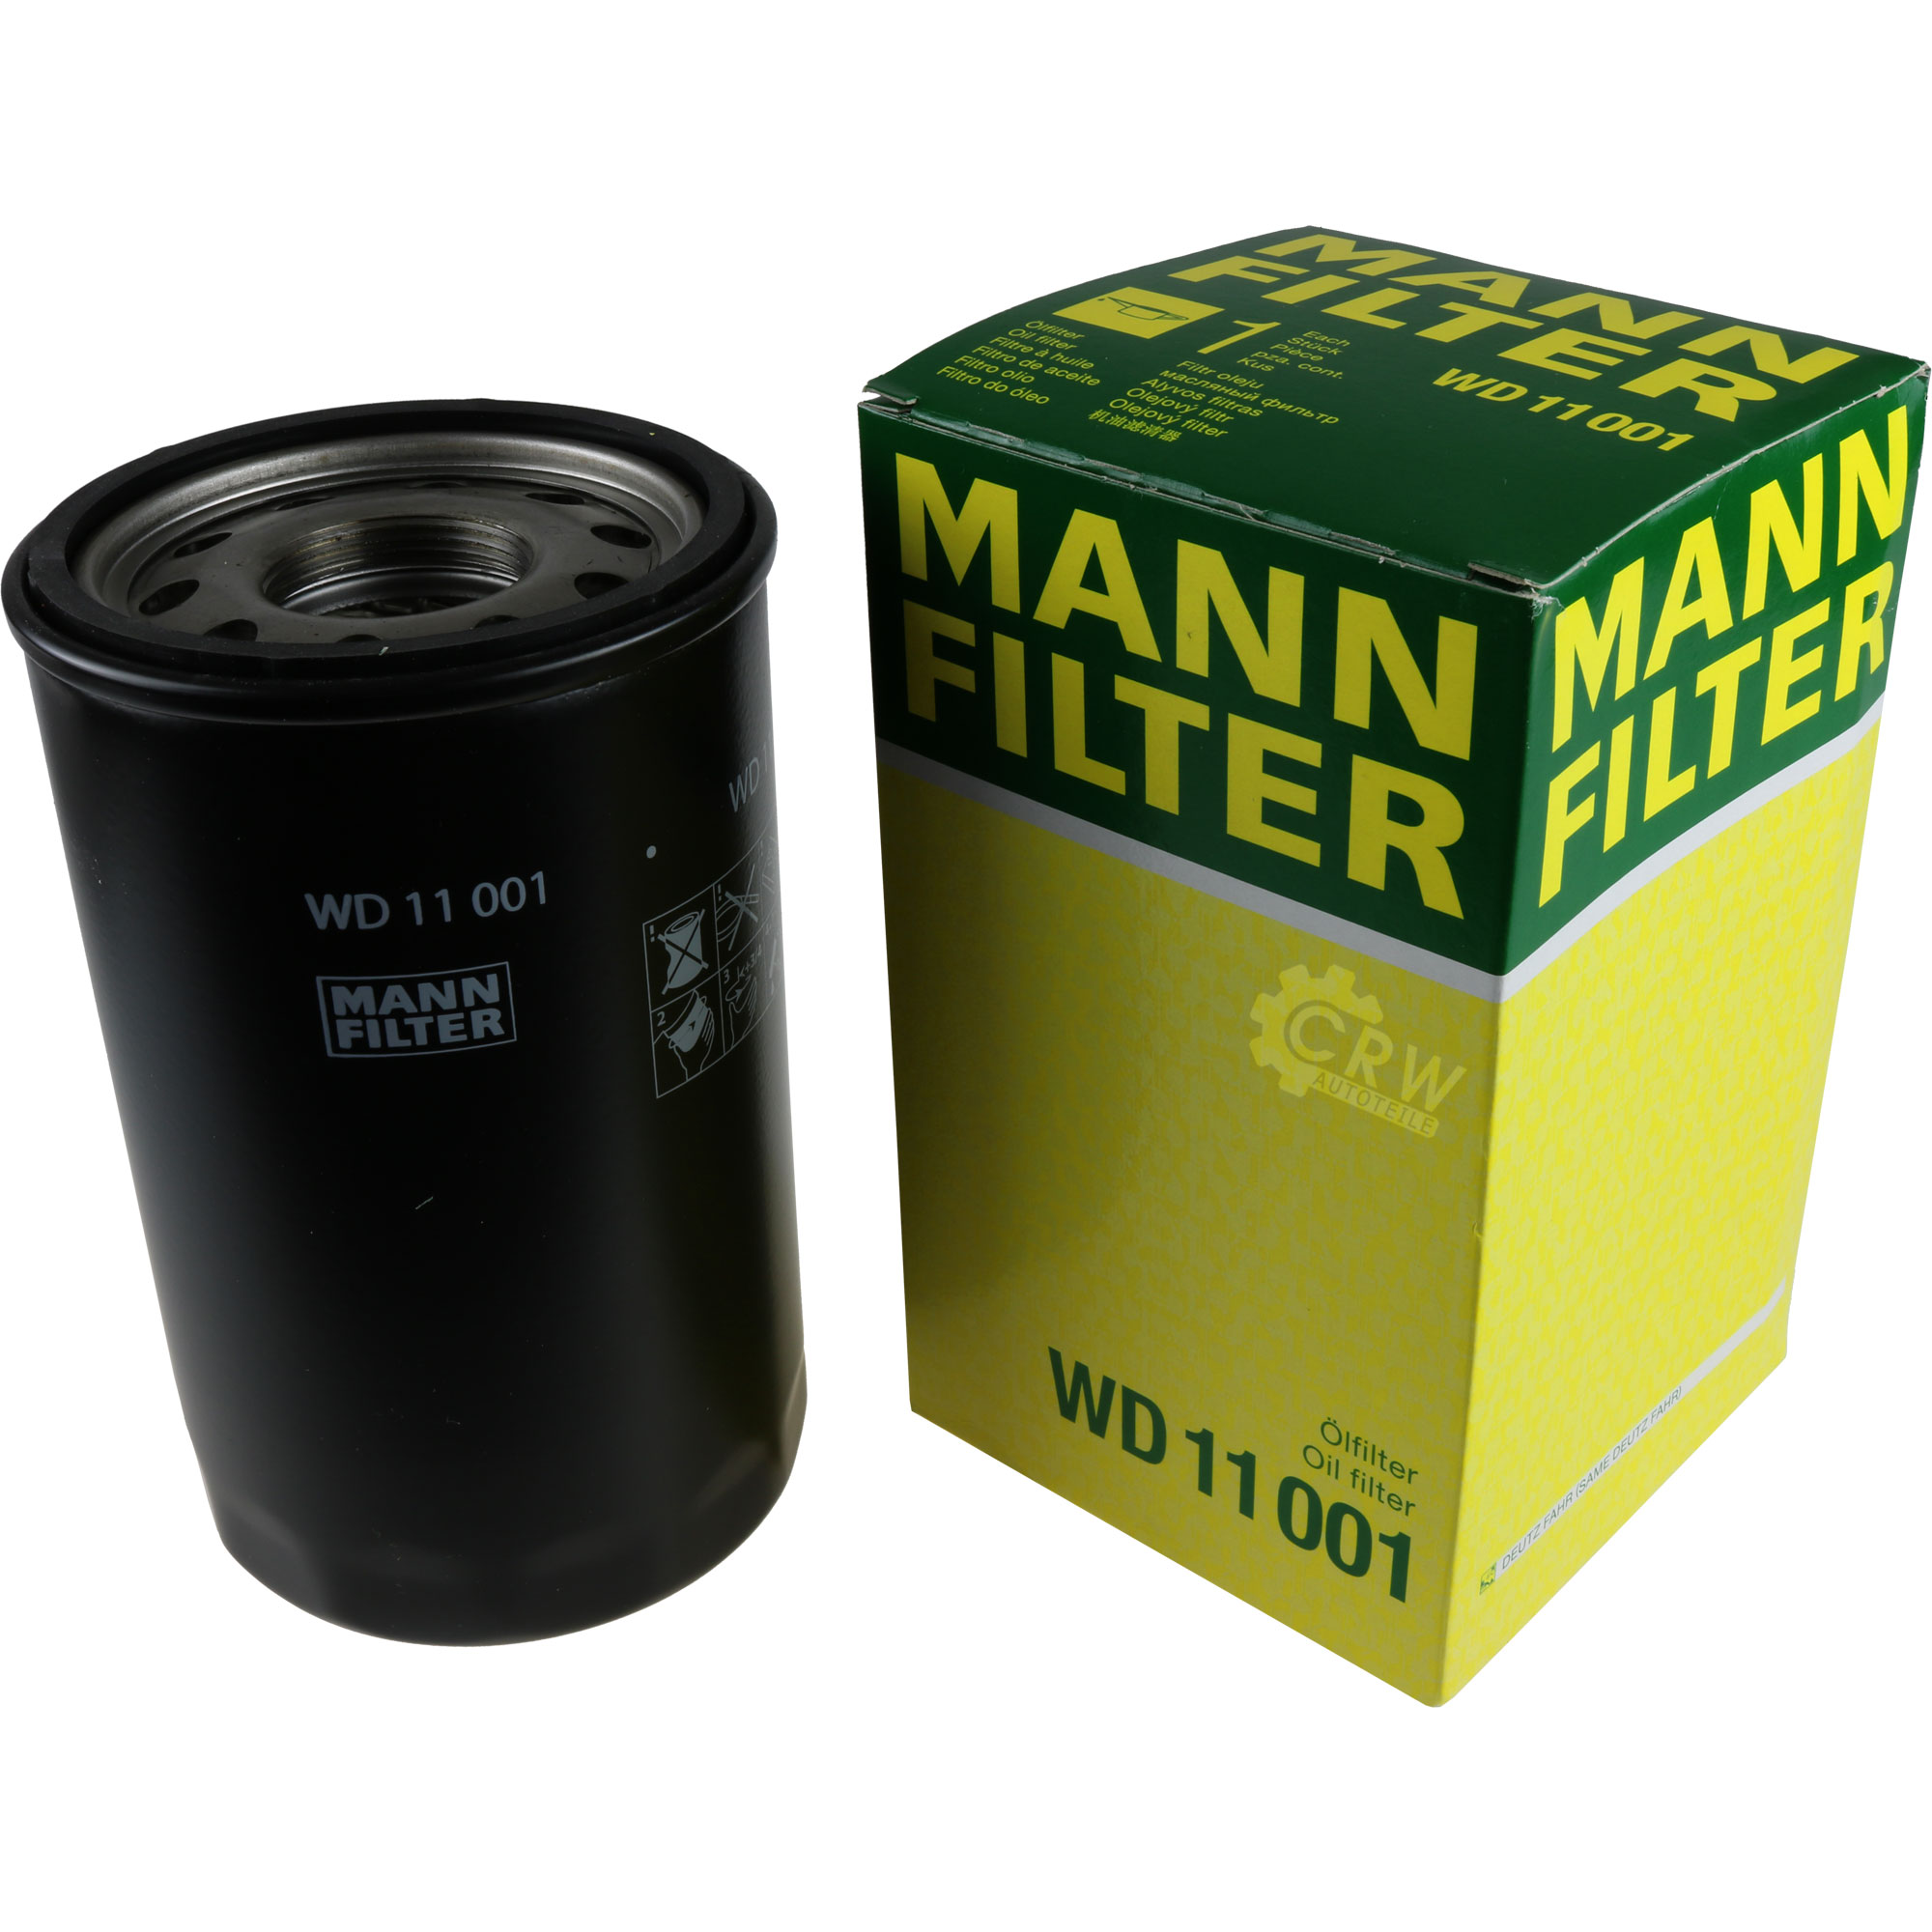 MANN-FILTER für Arbeitshydraulik WD 11 001